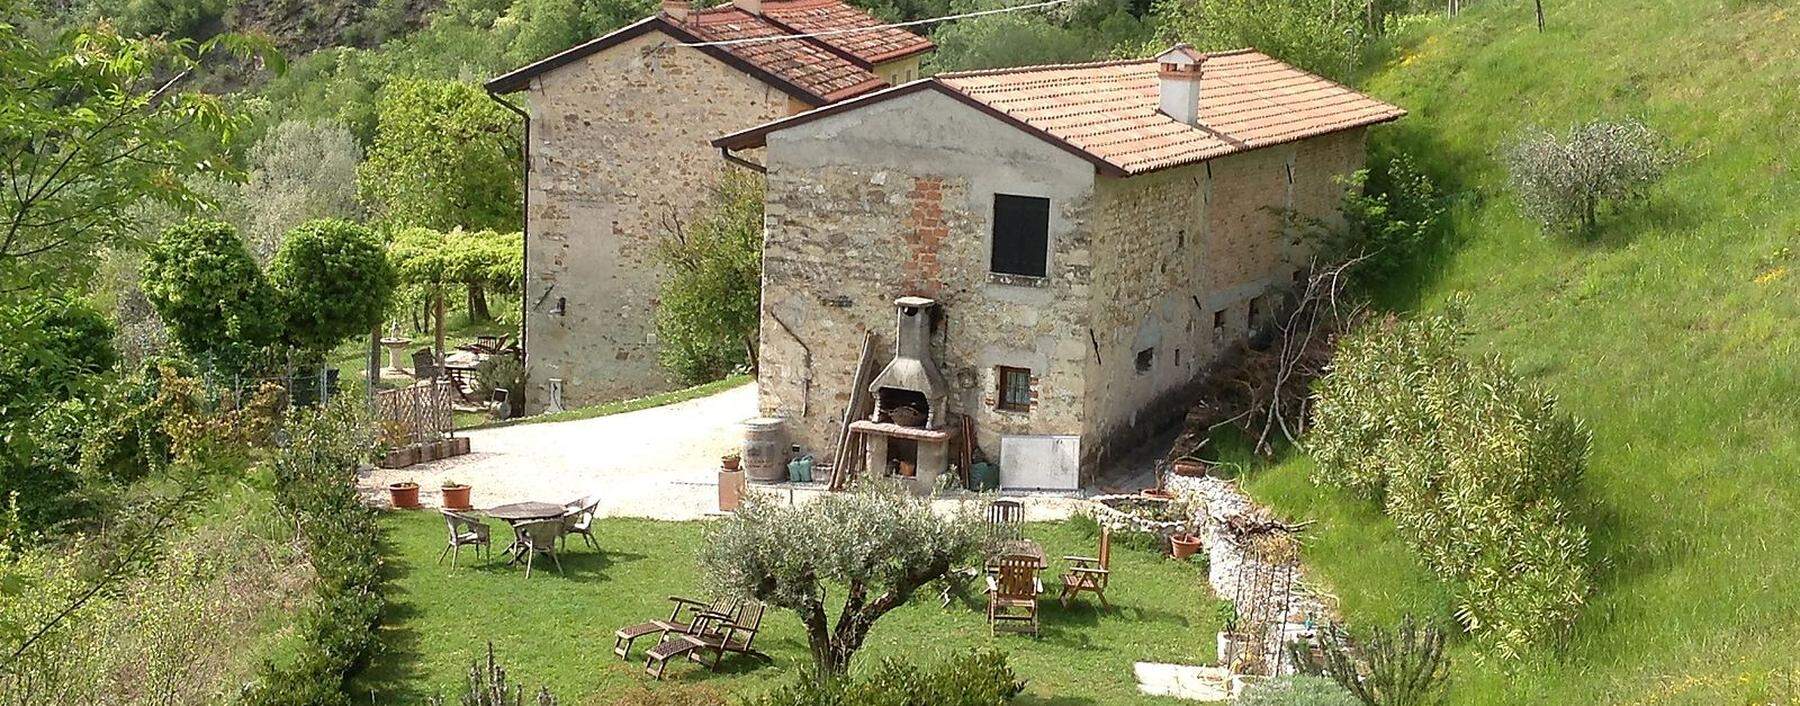 Gästehaus mit Terrasse des Weinguts Col di Stella in Italien.